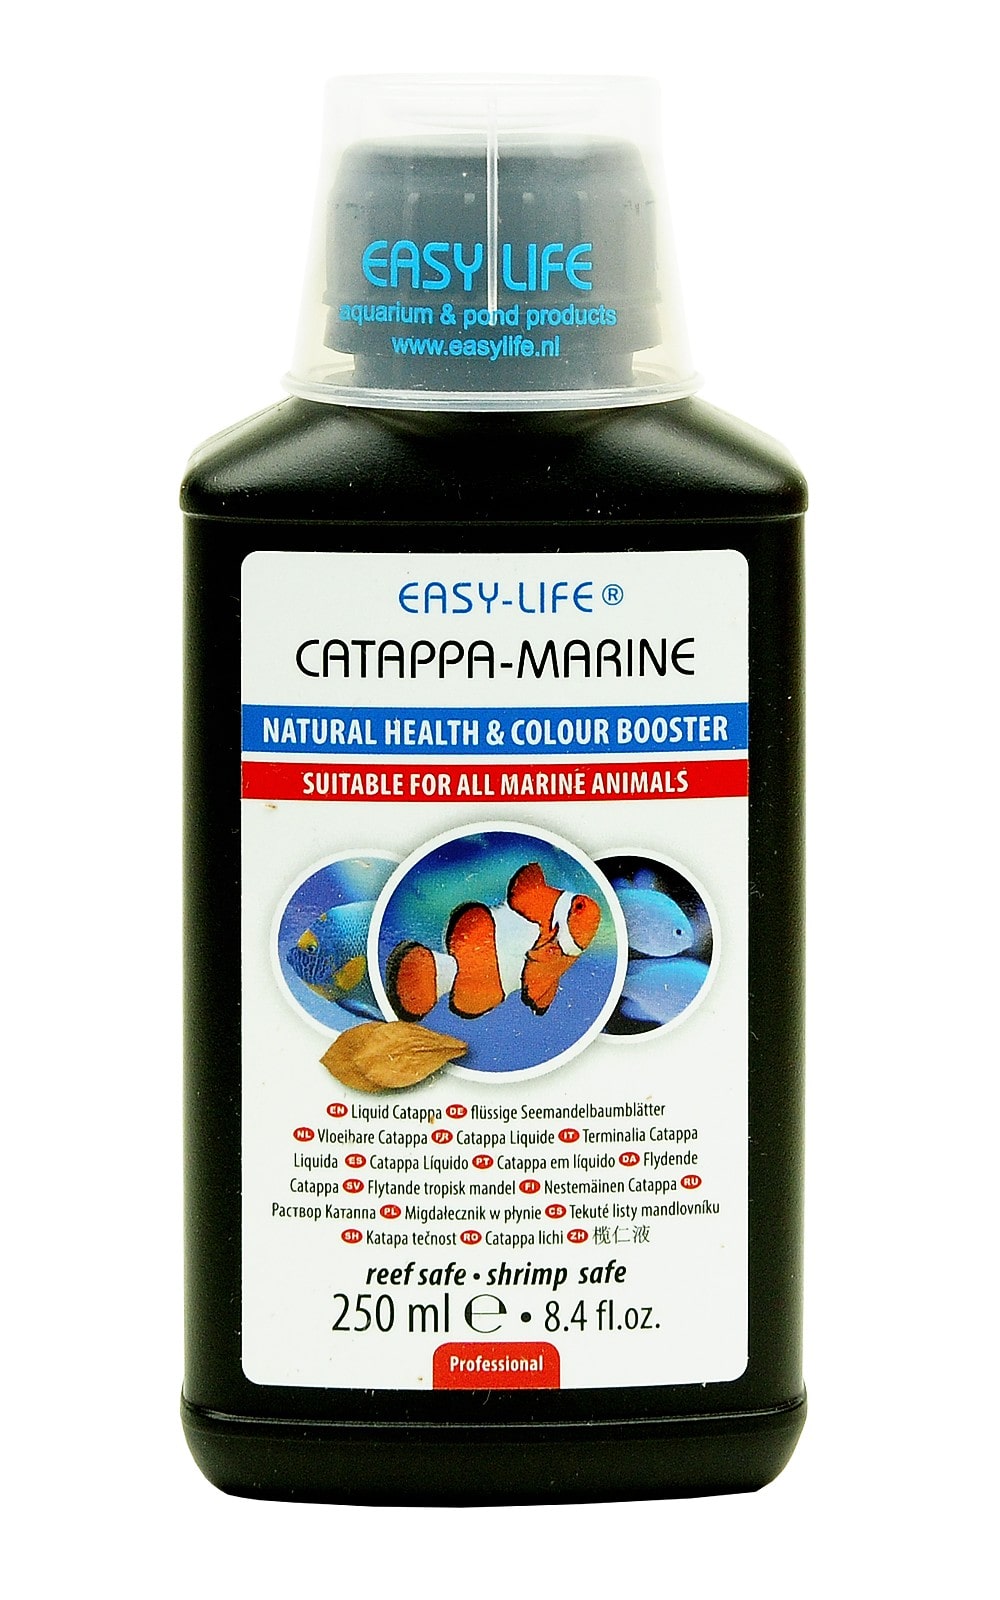 easy-life-catappa-marine-250-ml-produit-naturel-assurant-la-bonne-sante-et-coloration-des-poissons-marins-min